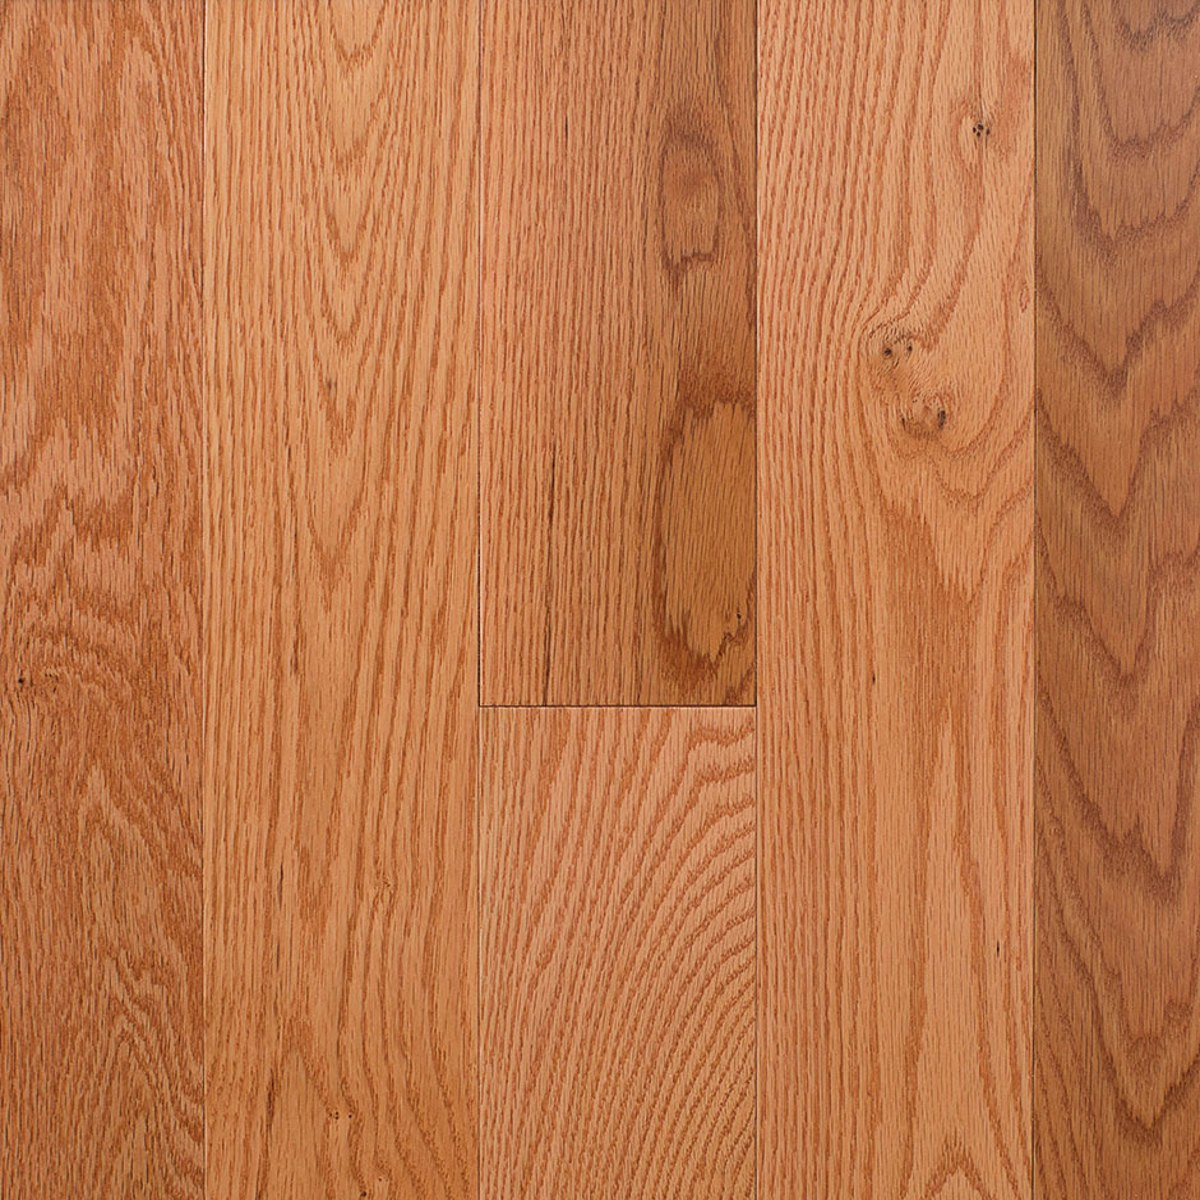 3 1 4 Natural Satin Red Oak Solid, Red Oak Solid Hardwood Flooring